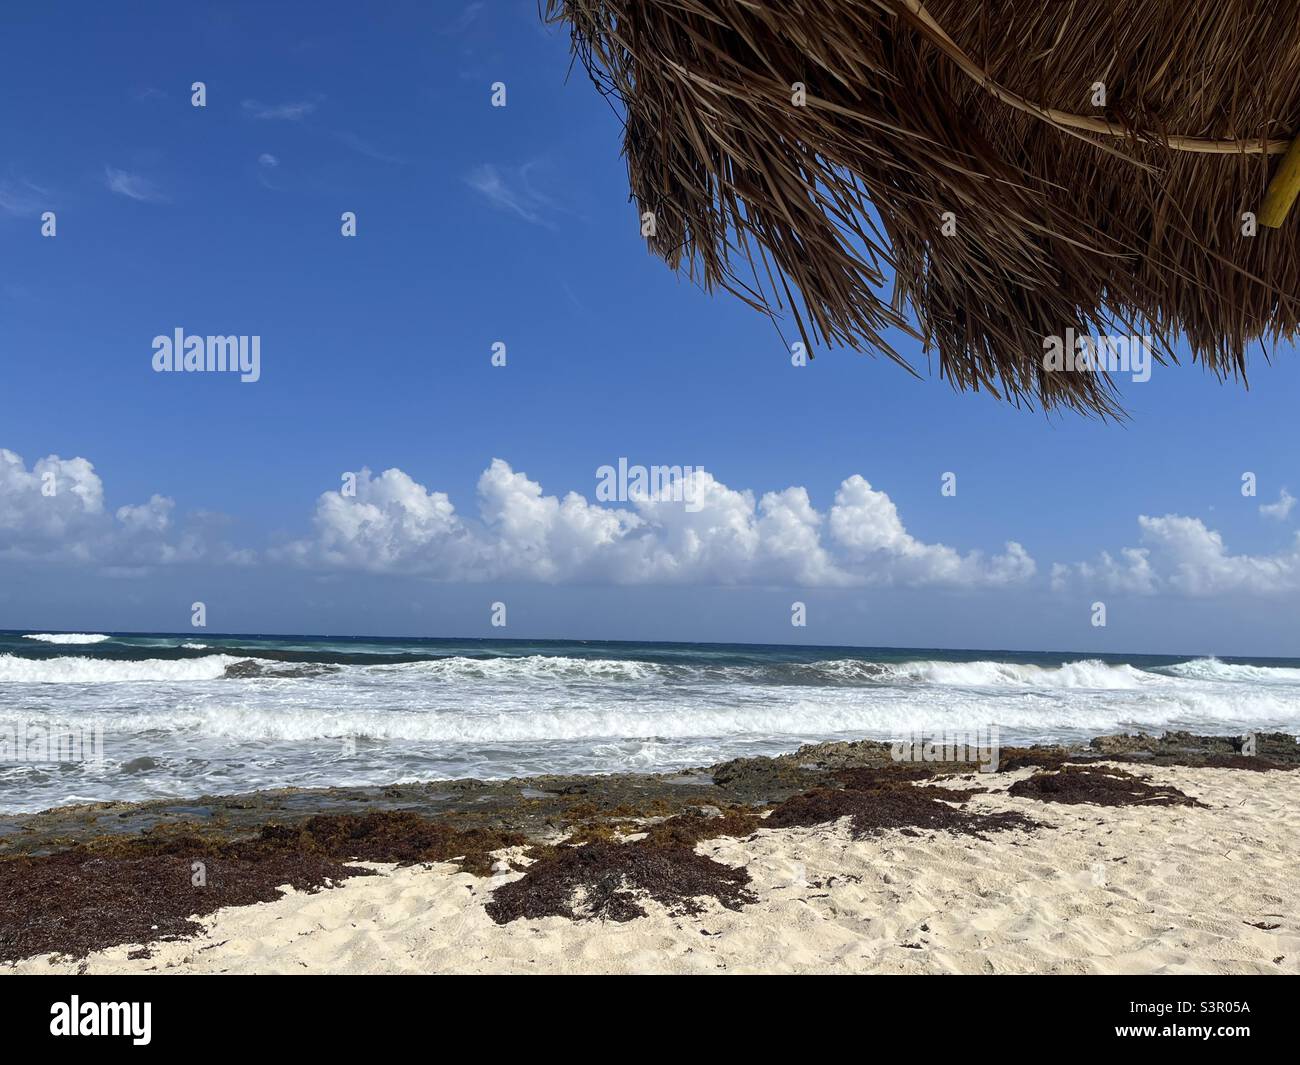 Île Cozumel au Mexique, vue sur la mer des Caraïbes avec du sable et du surf Banque D'Images